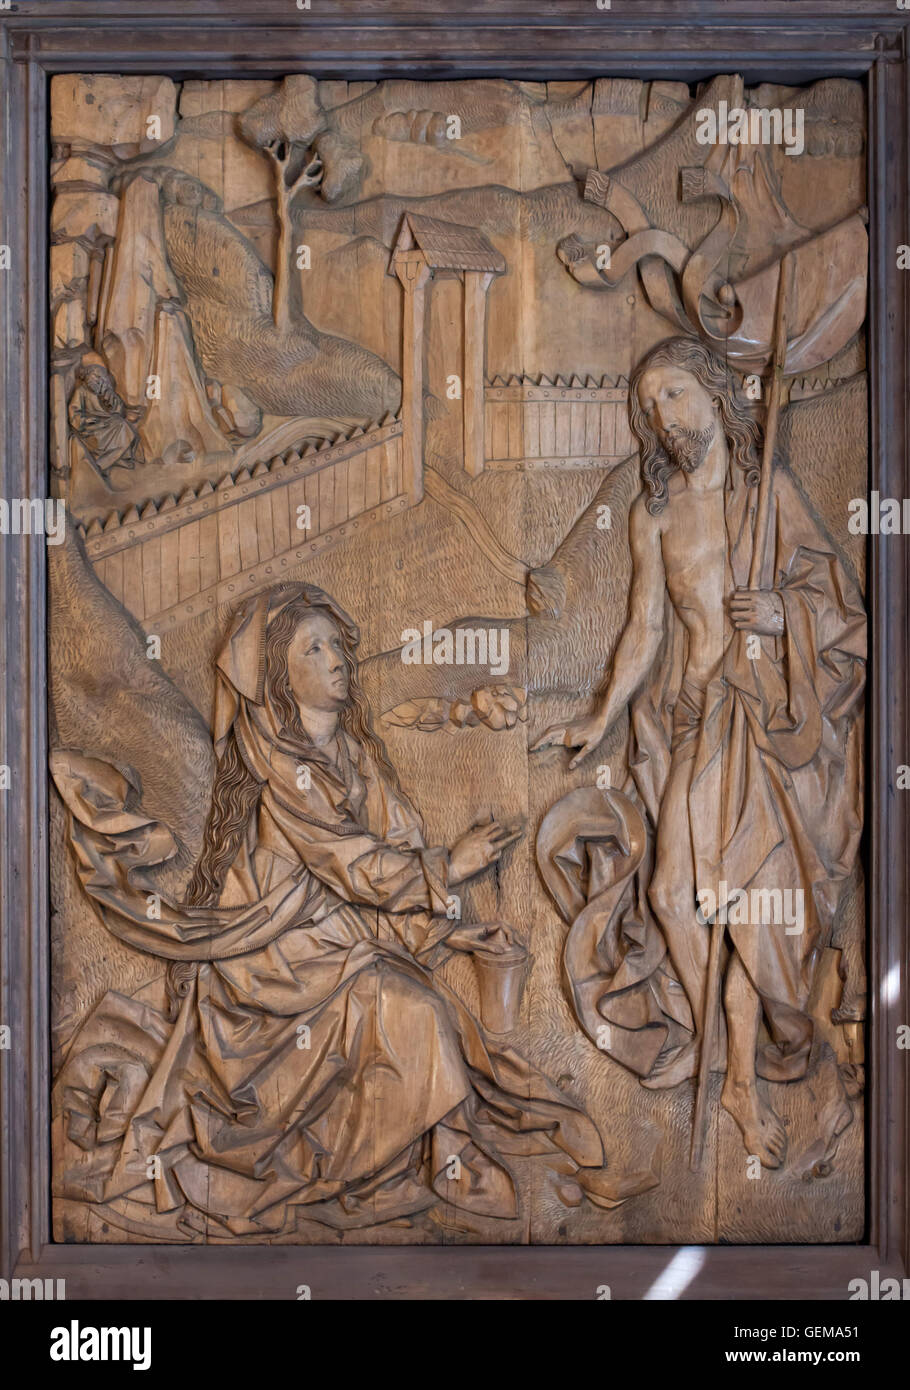 Il Cristo risorto appare a Maria di Magdala. Intaglio del legno da 1490-1492 da scultore tedesco Tilman Riemenschneider visualizzato nel Bode Museum di Berlino, Germania. Foto Stock